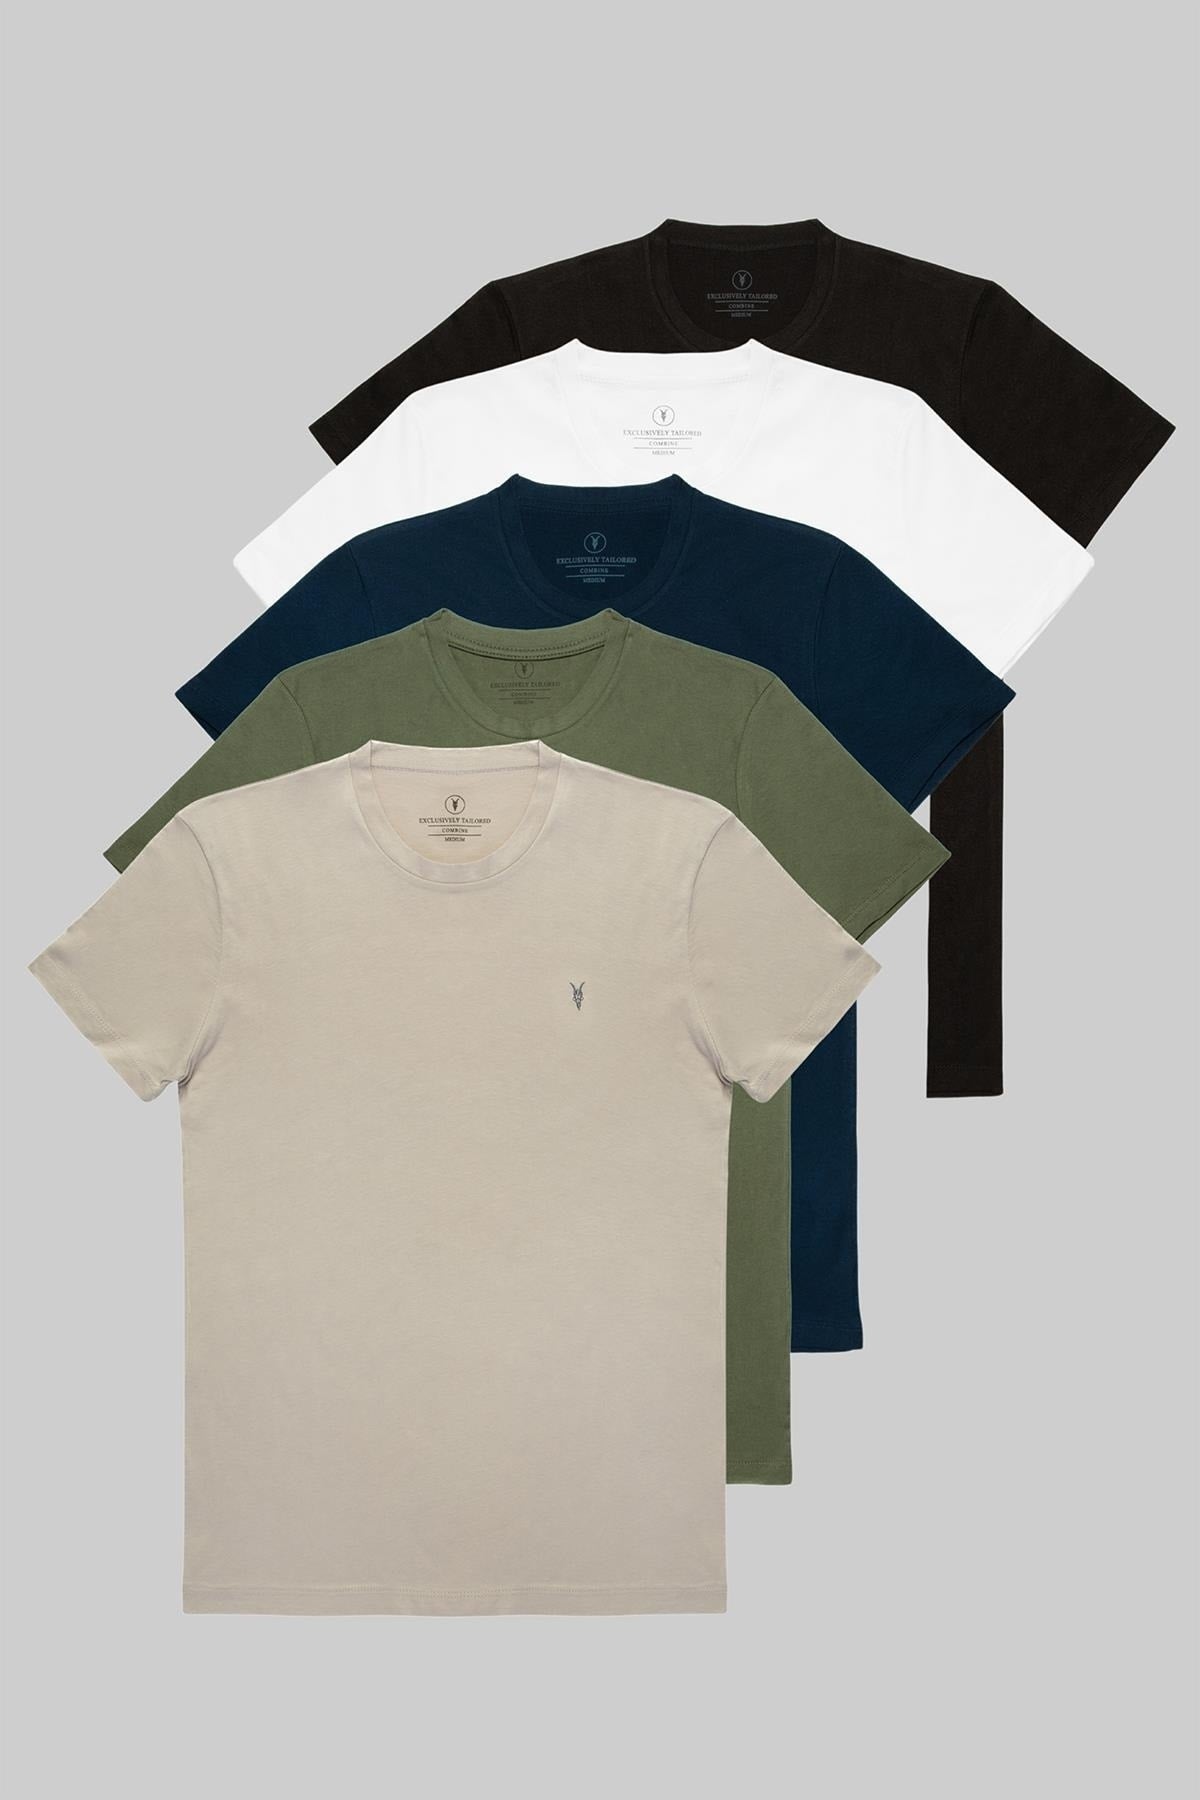 Men's Black White Khaki Gray Navy Blue 100% Cotton 5 Pcs T-shirt Pack